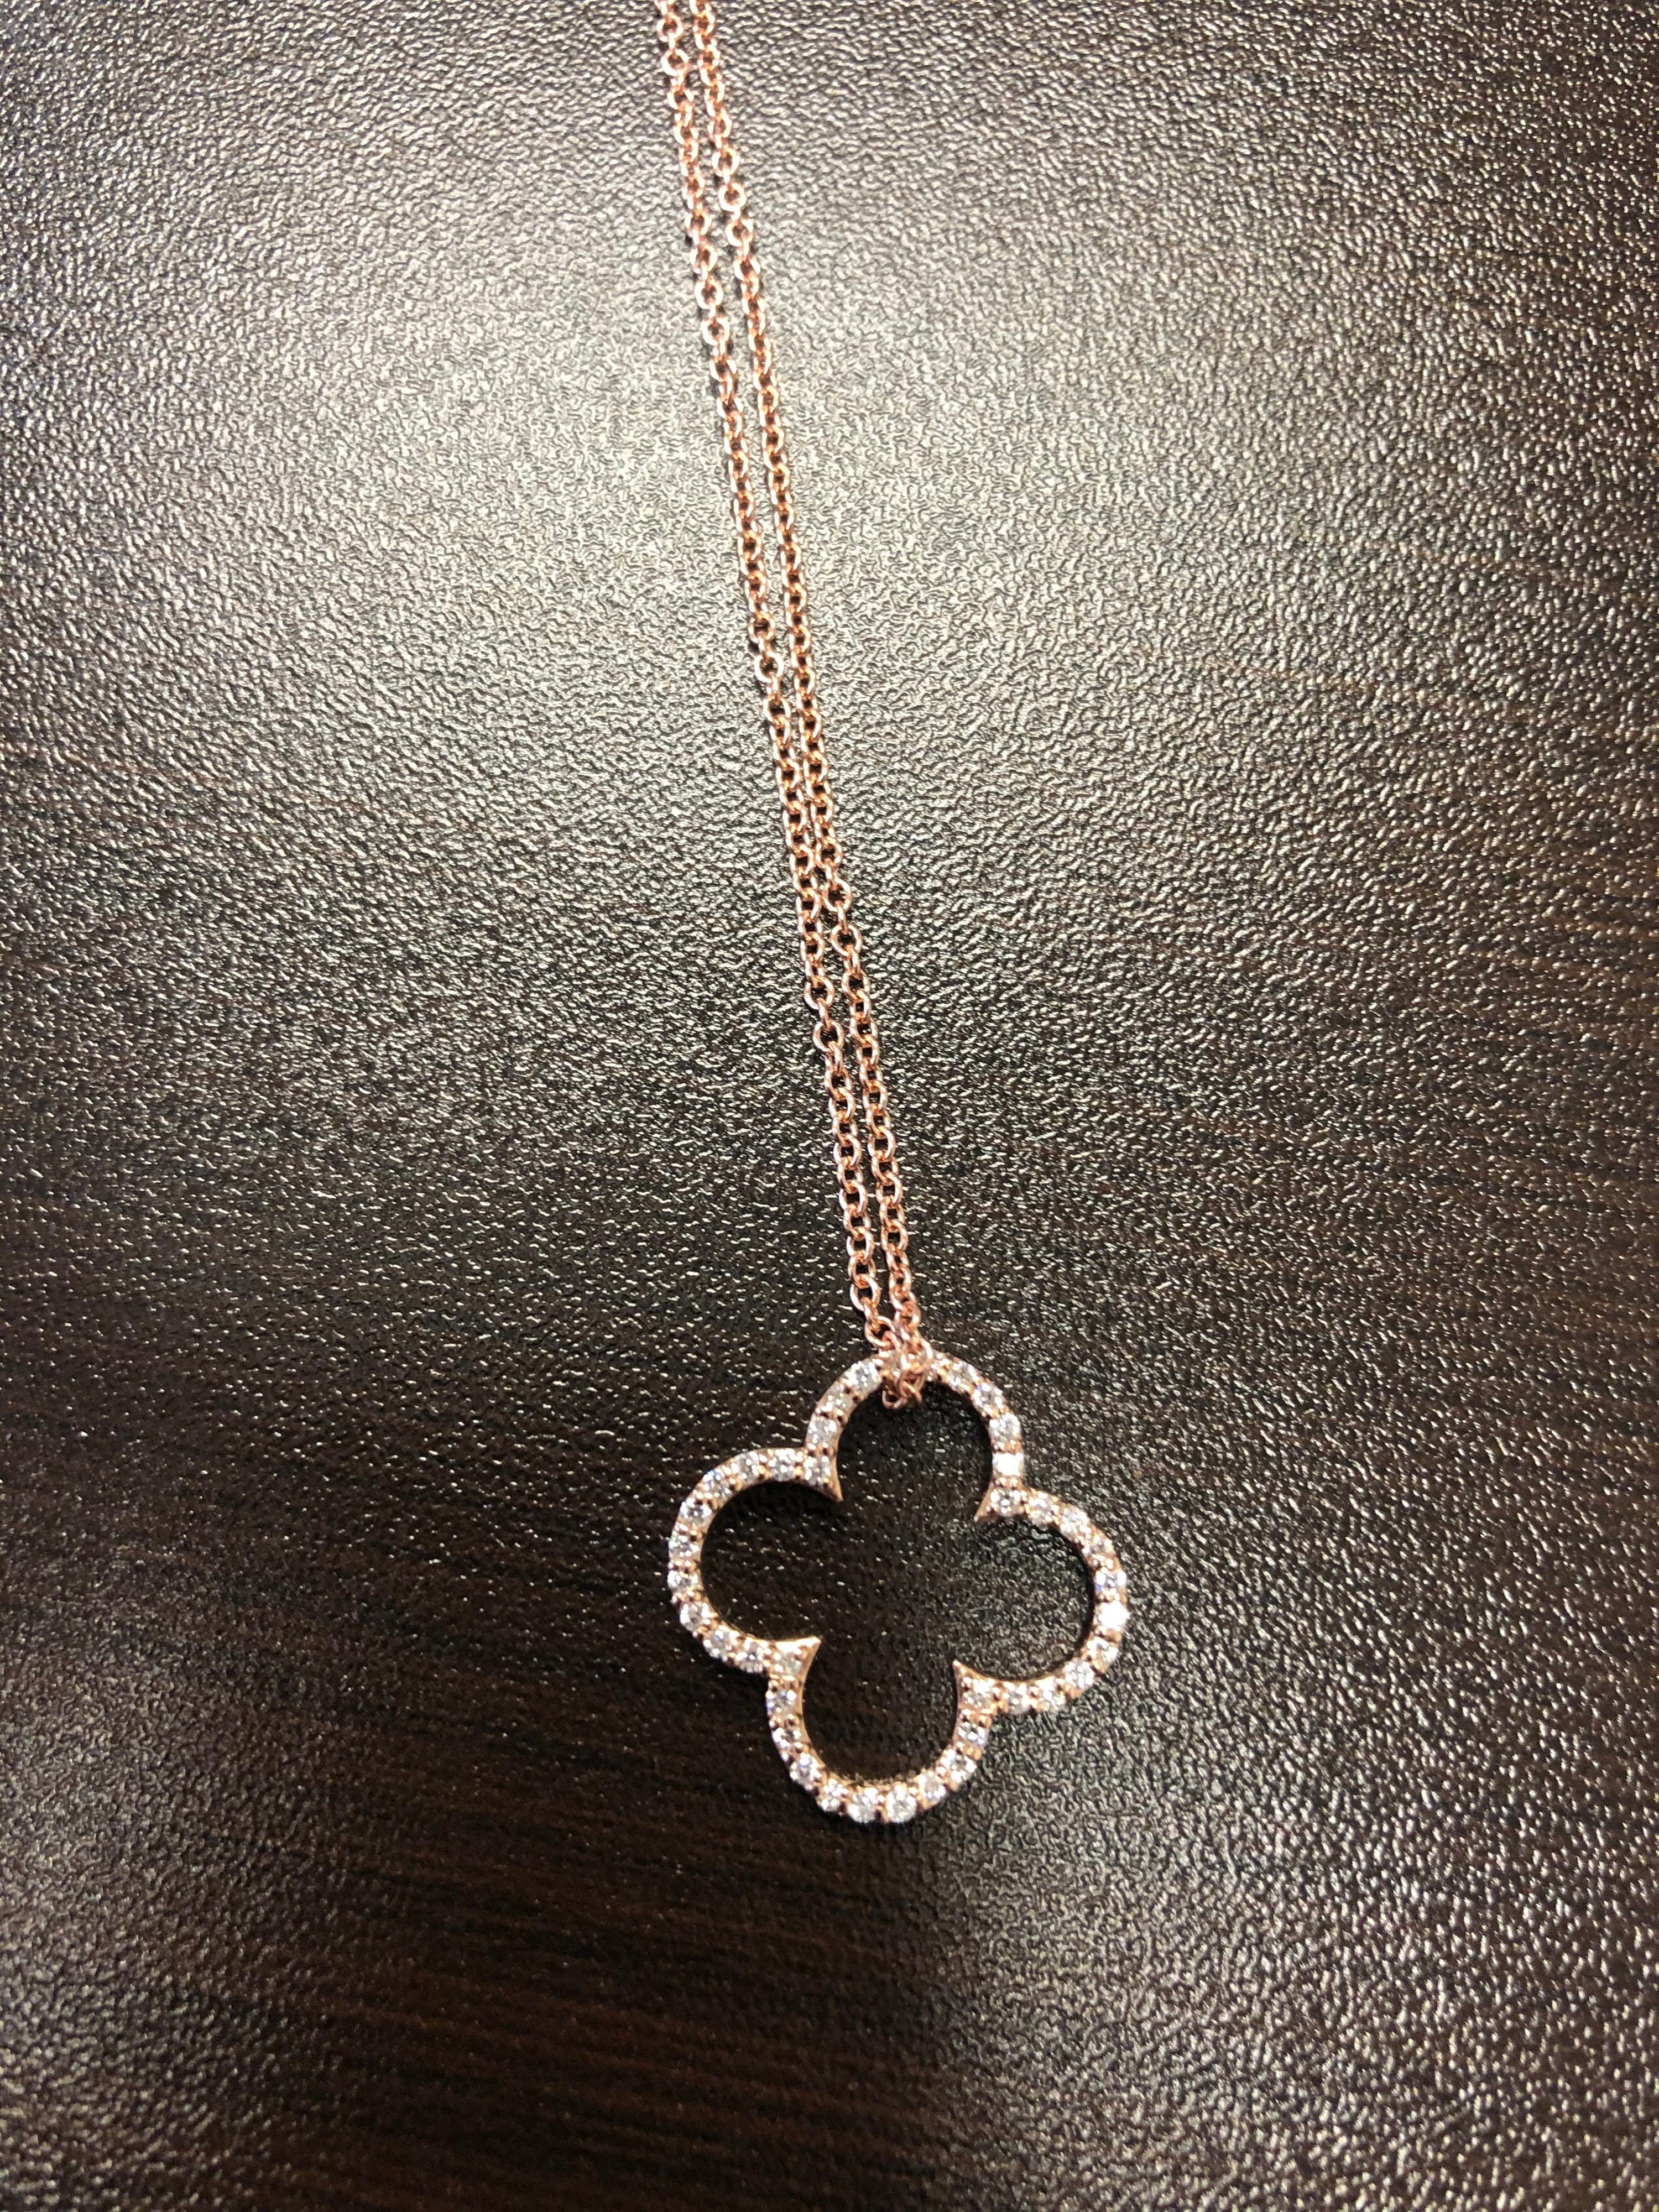 clover shape necklace